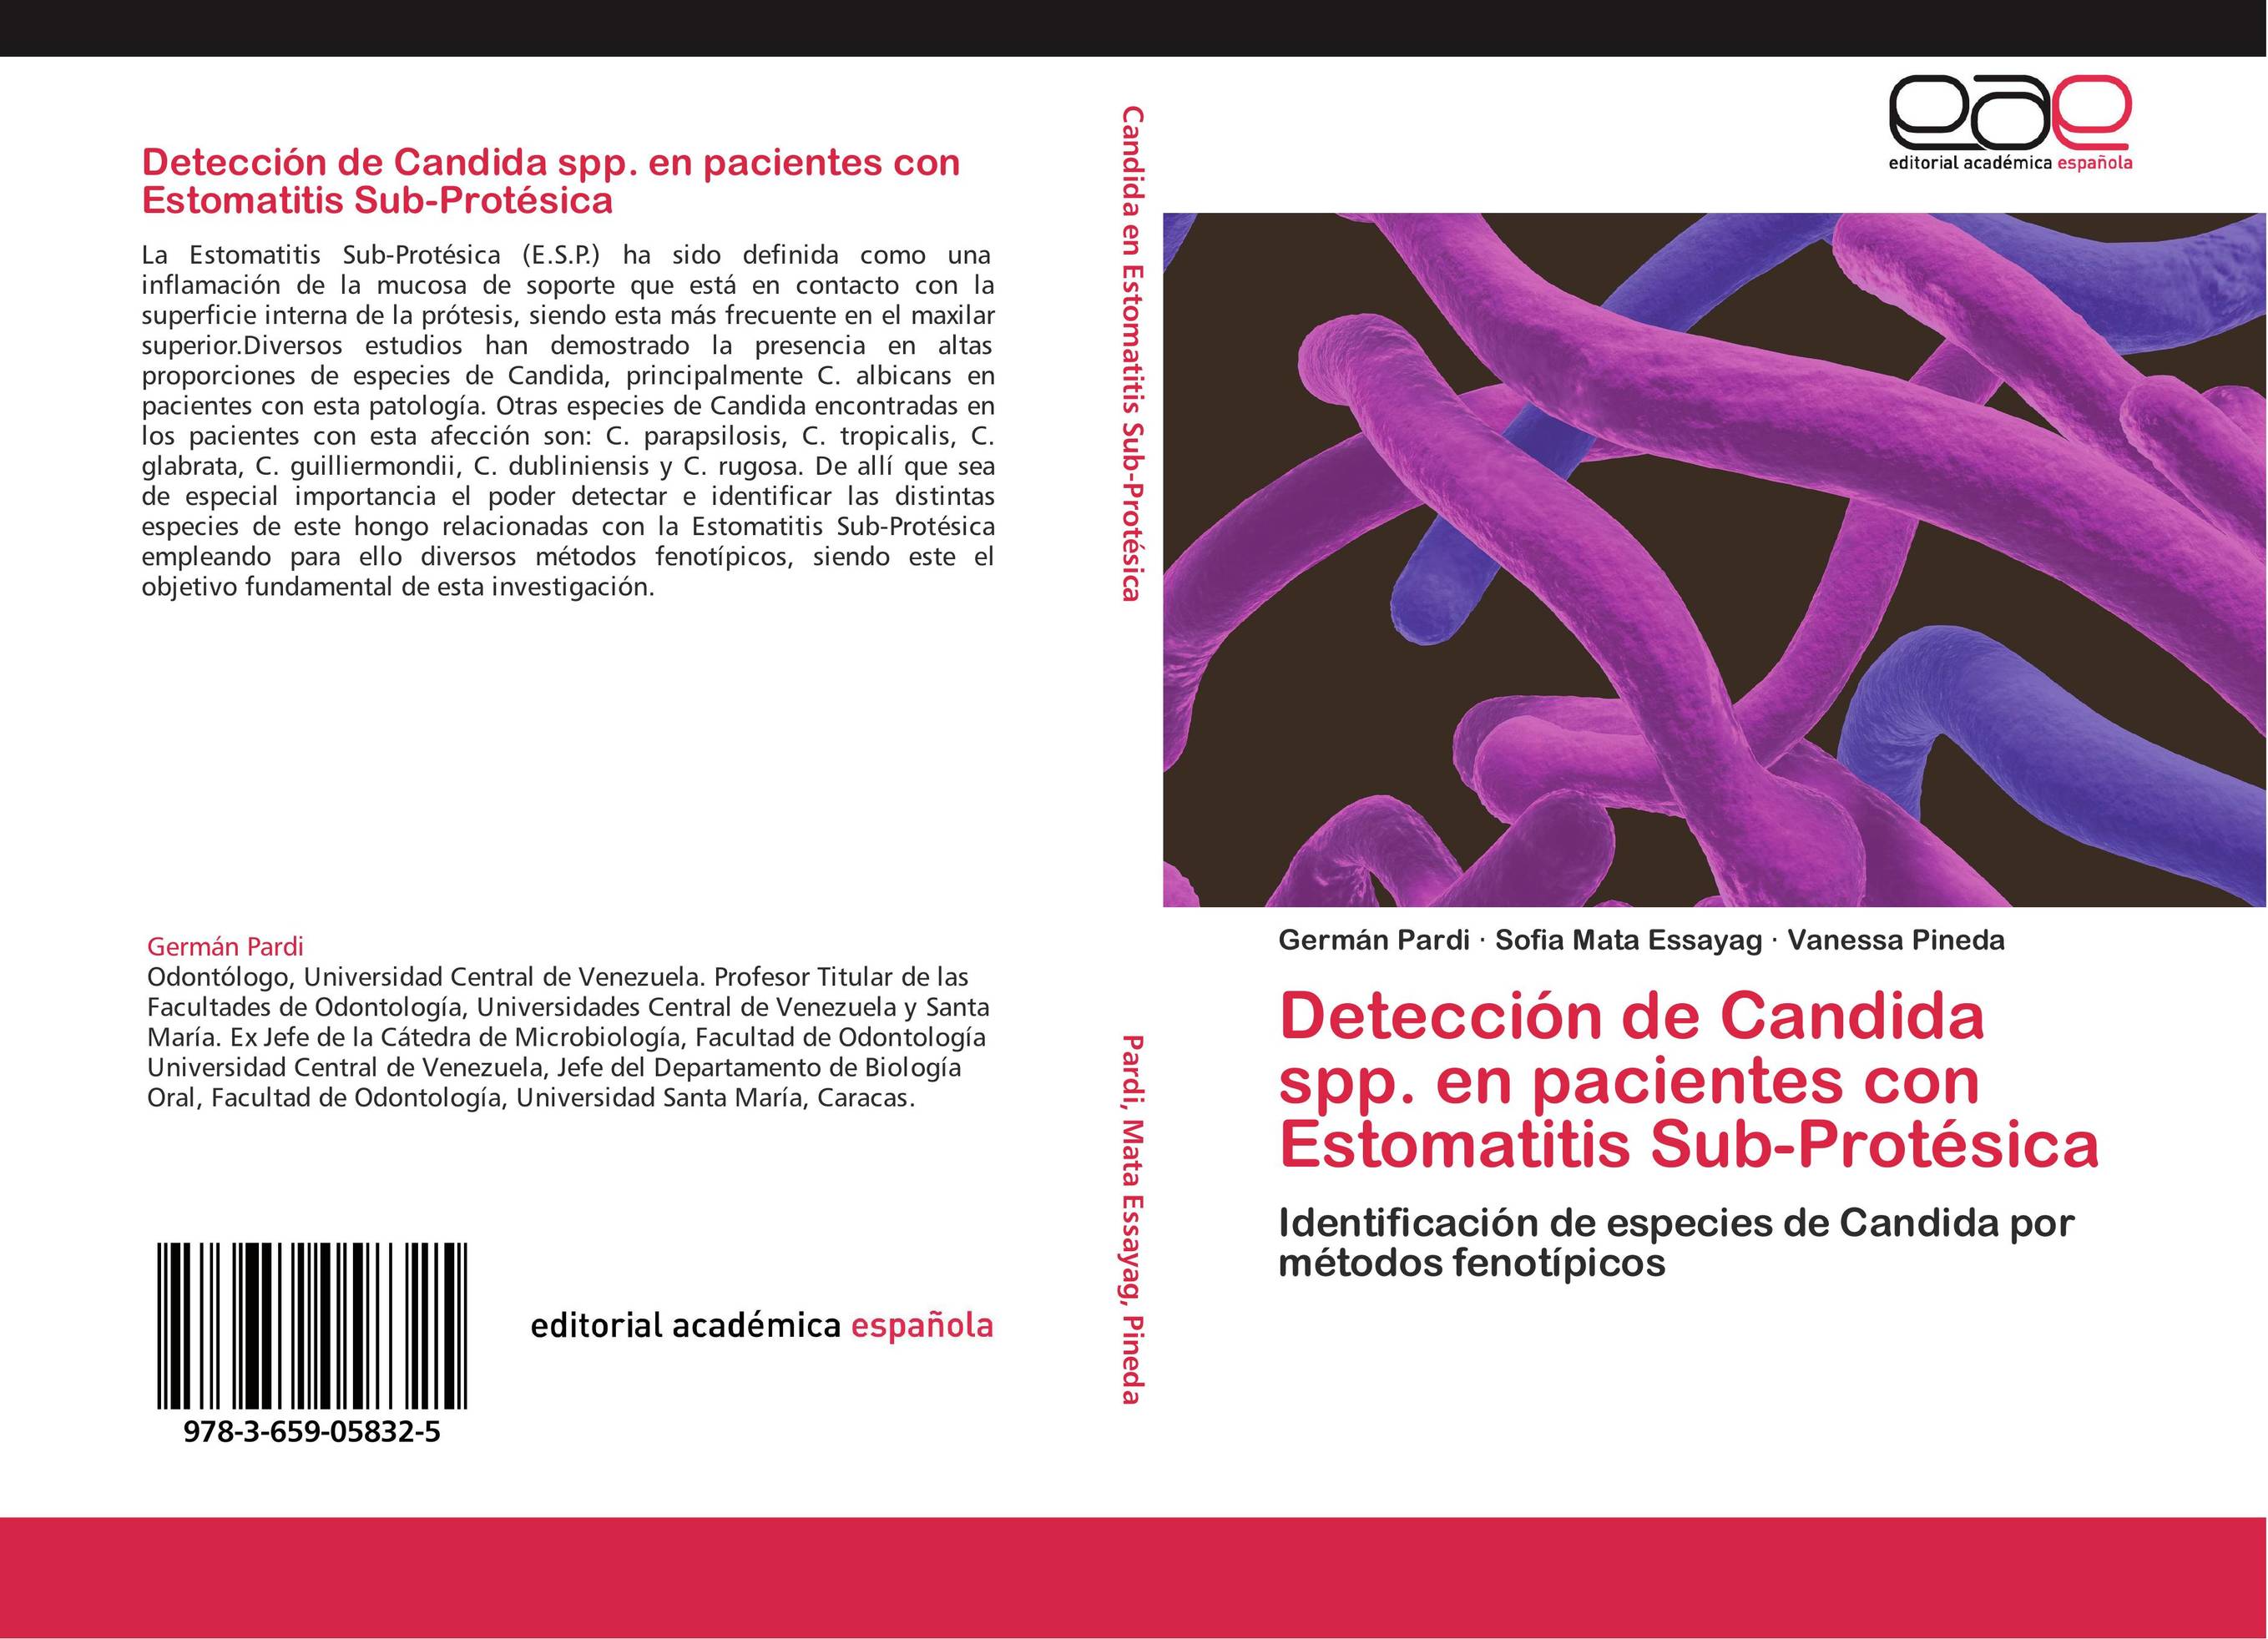 Detección de Candida spp. en pacientes con Estomatitis Sub-Protésica